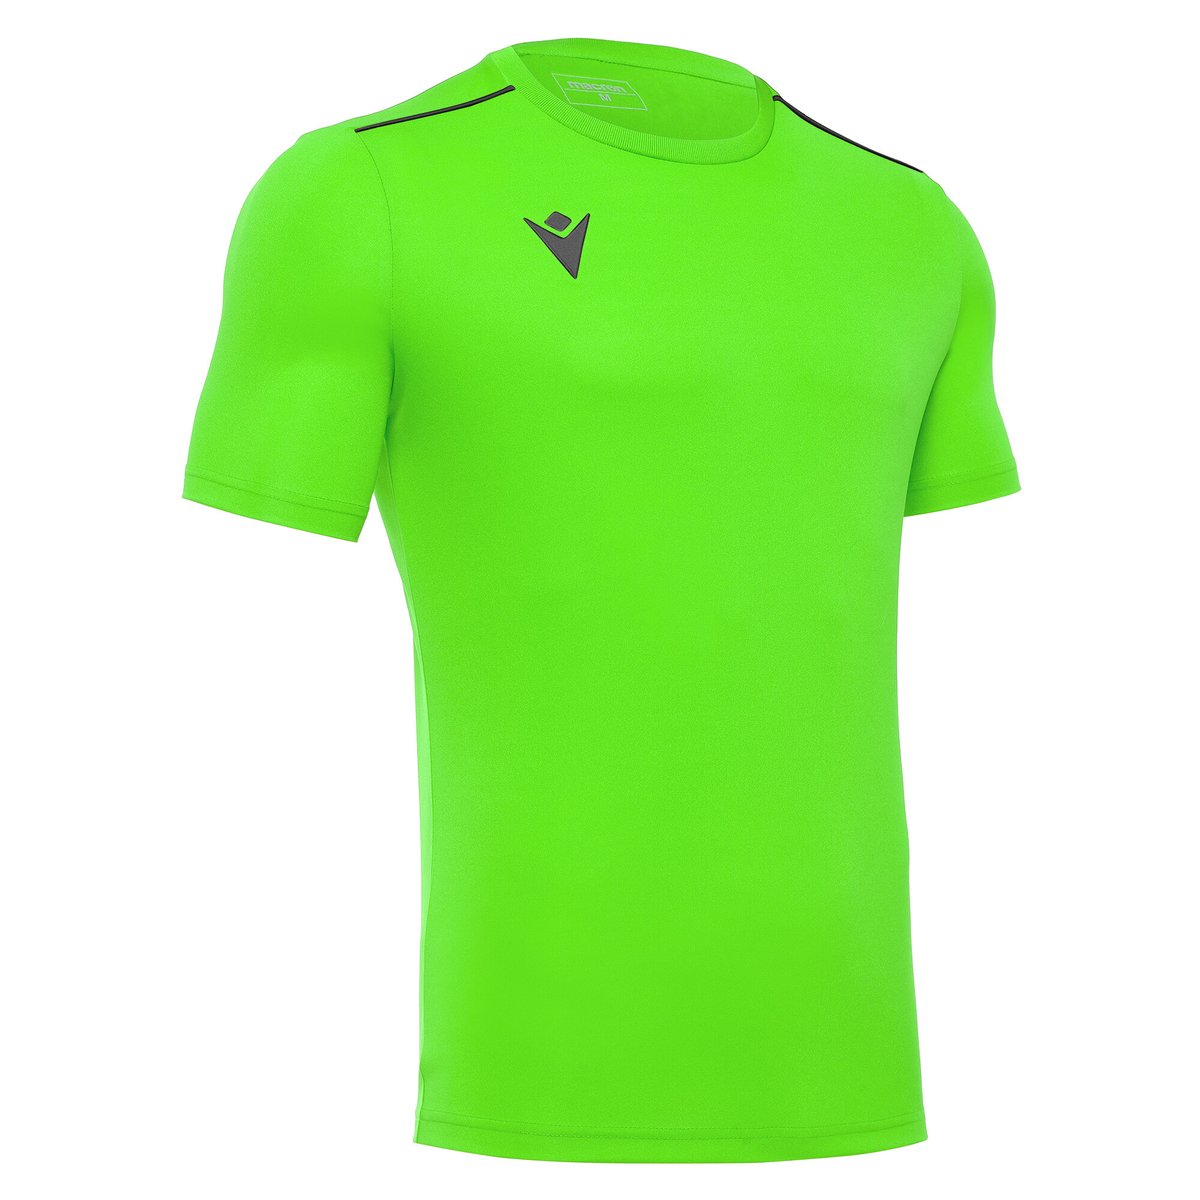 Macron Rigel Hero Shirt - Neon Green